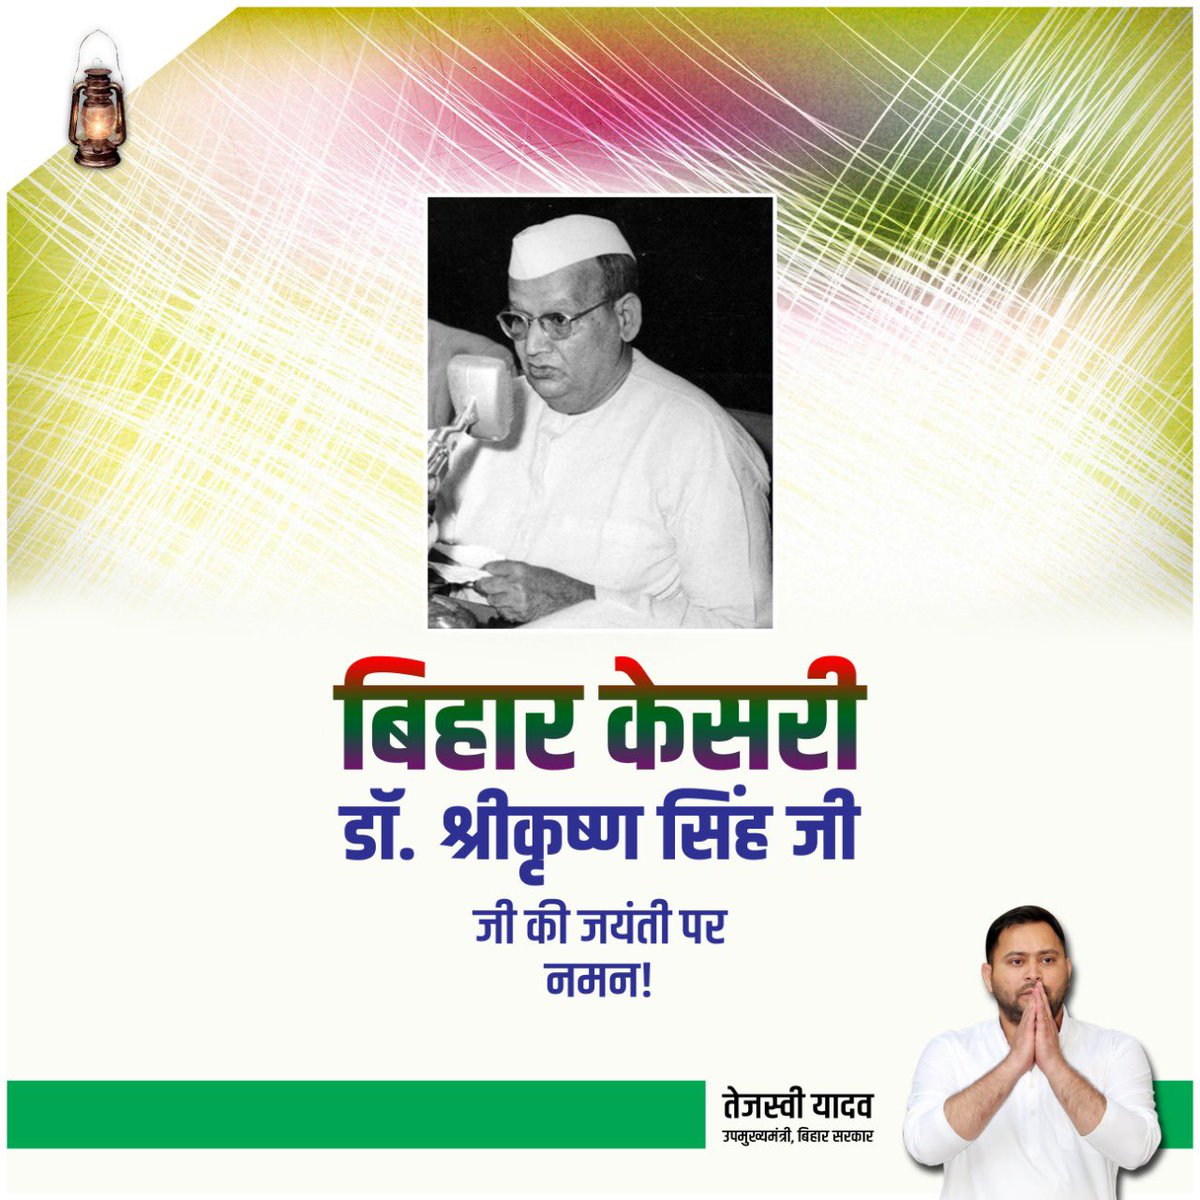 स्वतंत्र भारत में बिहार को सशक्त शुरुआत देने वाले, राज्य के विकास का मजबूत आधार तैयार करने वाले बिहार के प्रथम मुख्यमंत्री 'बिहार केसरी' श्रीकृष्ण सिंह जी को उनकी जयंती पर कोटिशः नमन।